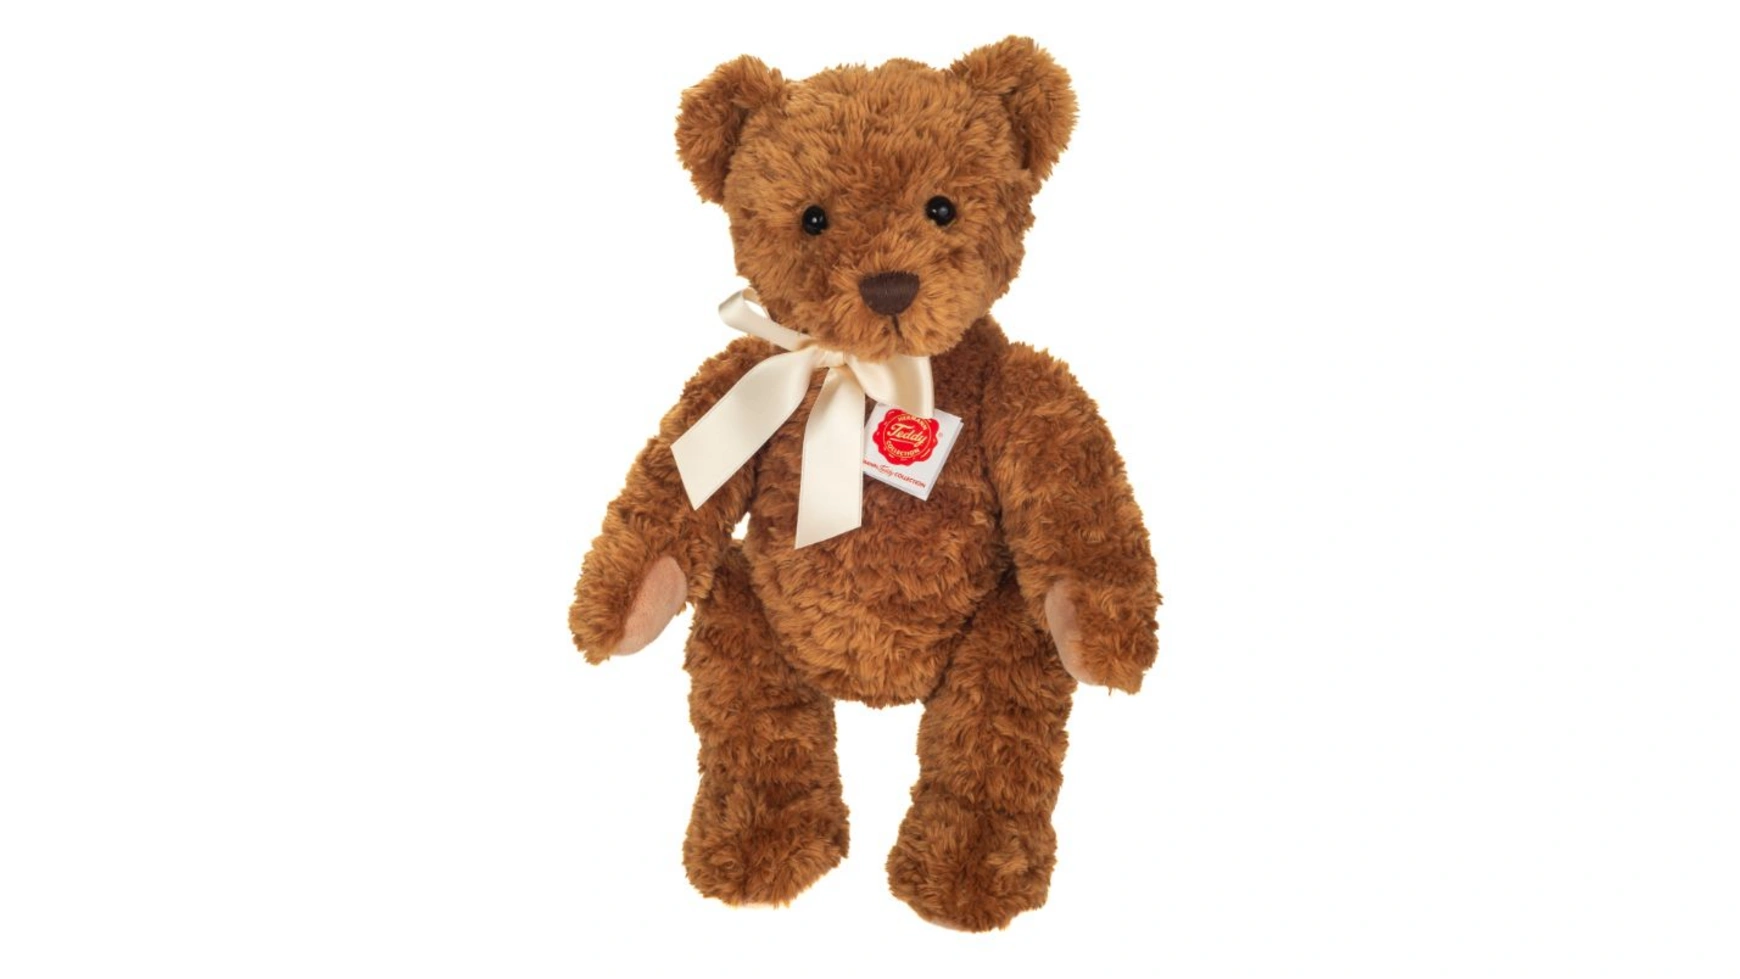 Teddy classic шарнирно-сочлененный в 5 направлениях 37 см Teddy-Hermann мягкая игрушка мишка в шарфе цвет коричневый